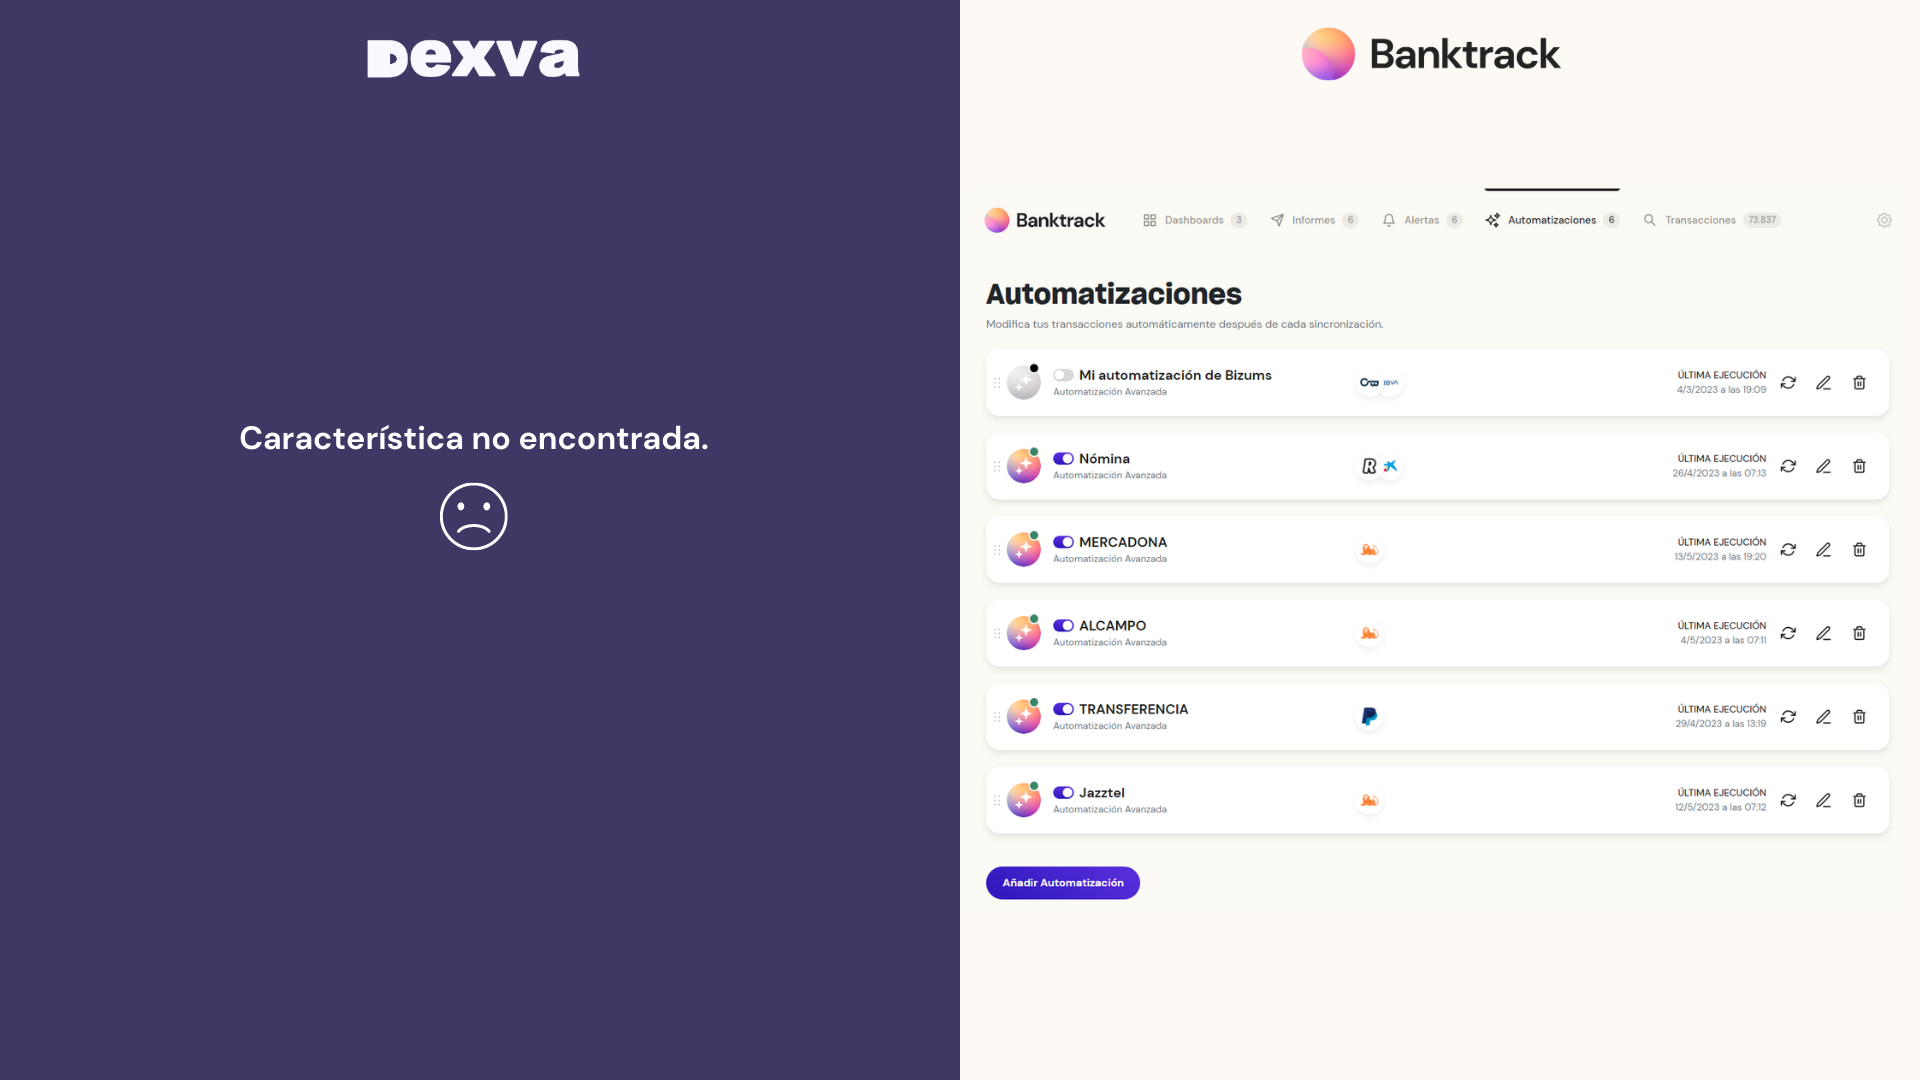 Captura de pantalla sobre la herramienta Dexva que no incorpora automatizaciones avanzadas, con su alternativa Banktrack que sí que incorpora automatizaciones